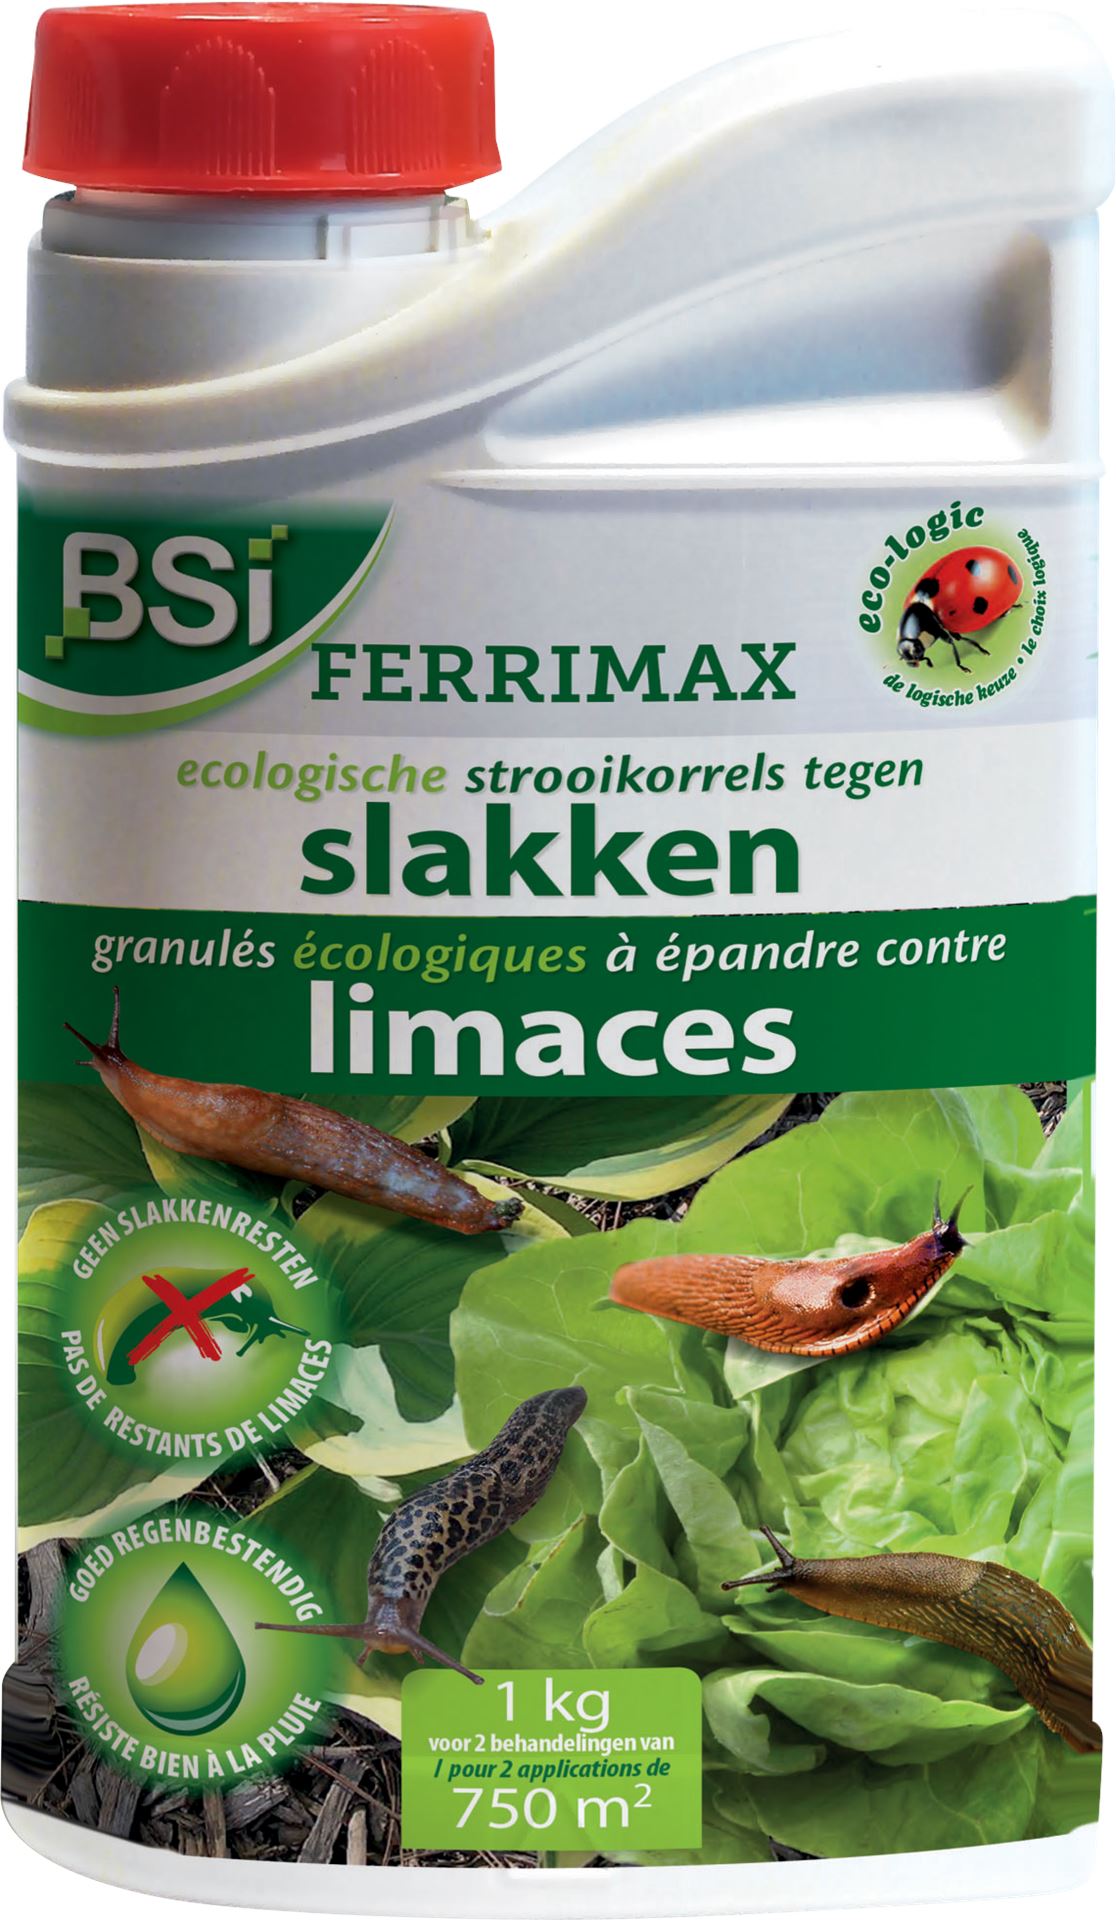 Ferrimax-1kg-Ecologische-slakkenkorrel-van-de-nieuwe-generatie